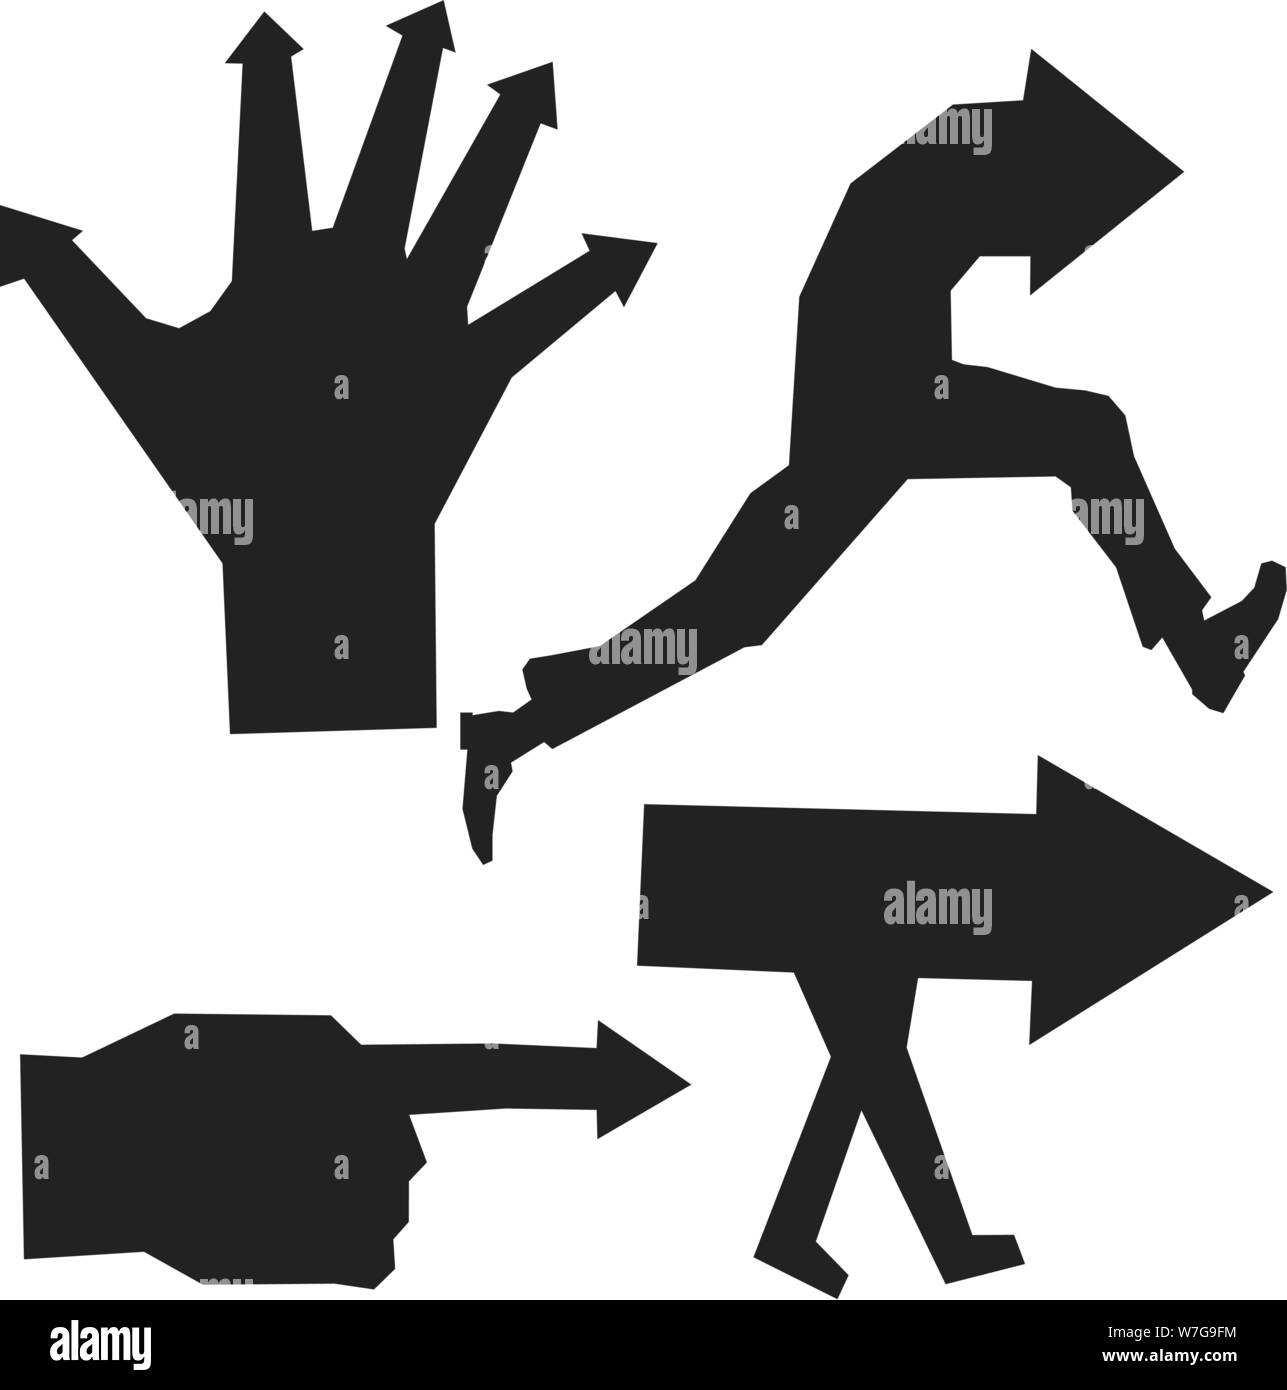 Illustrazione Vettoriale. Freccia nera in silhouette in mano, uomo in corsa o camminata. Illustrazione Vettoriale